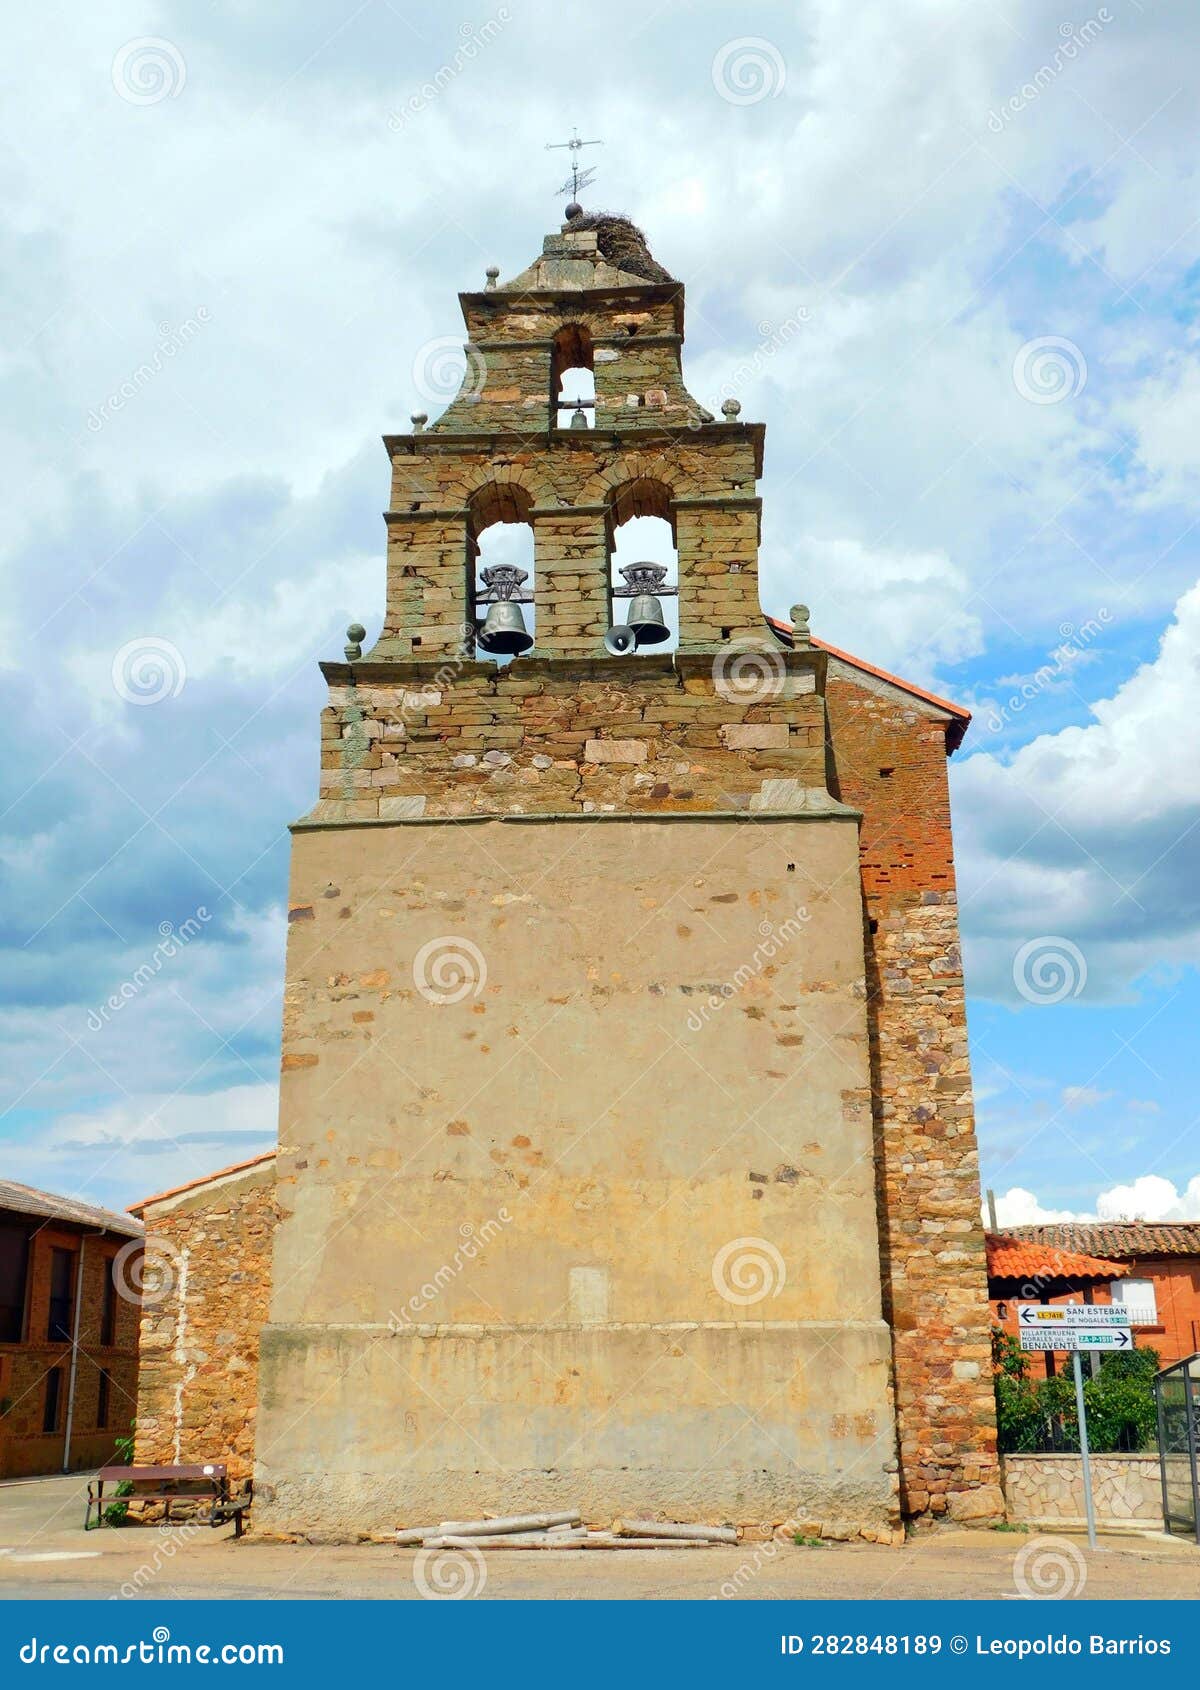 church of alcubilla de nogales, zamora, spain